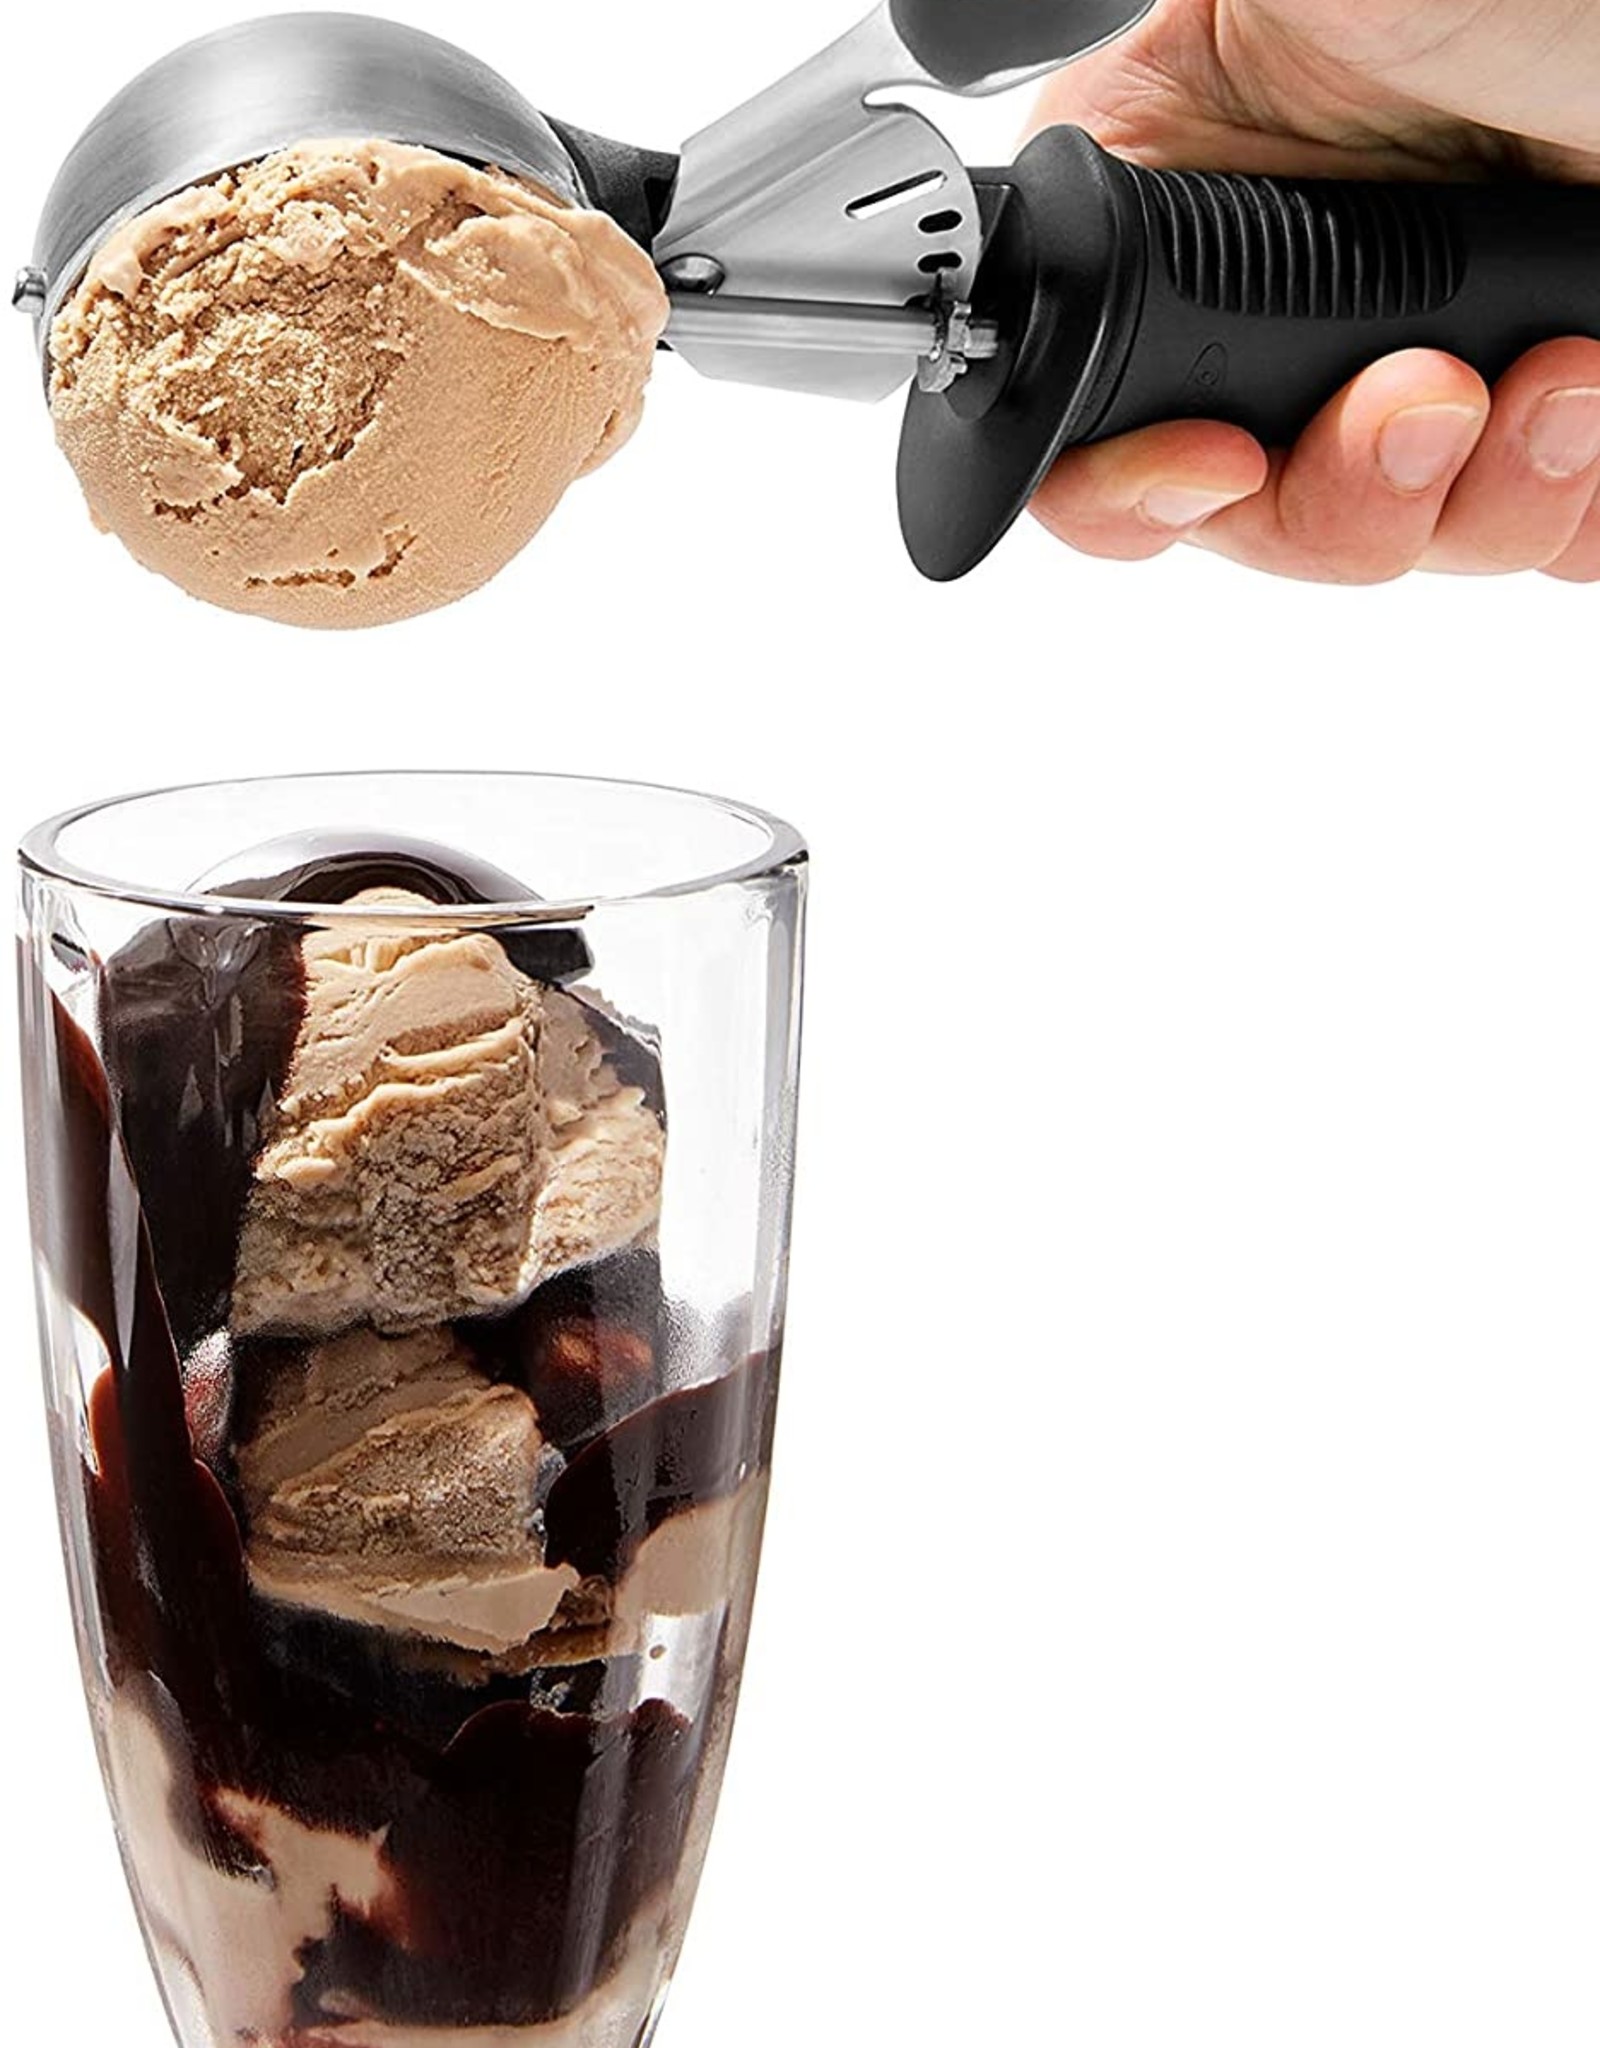 OXO Trigger Ice Cream Scoop 